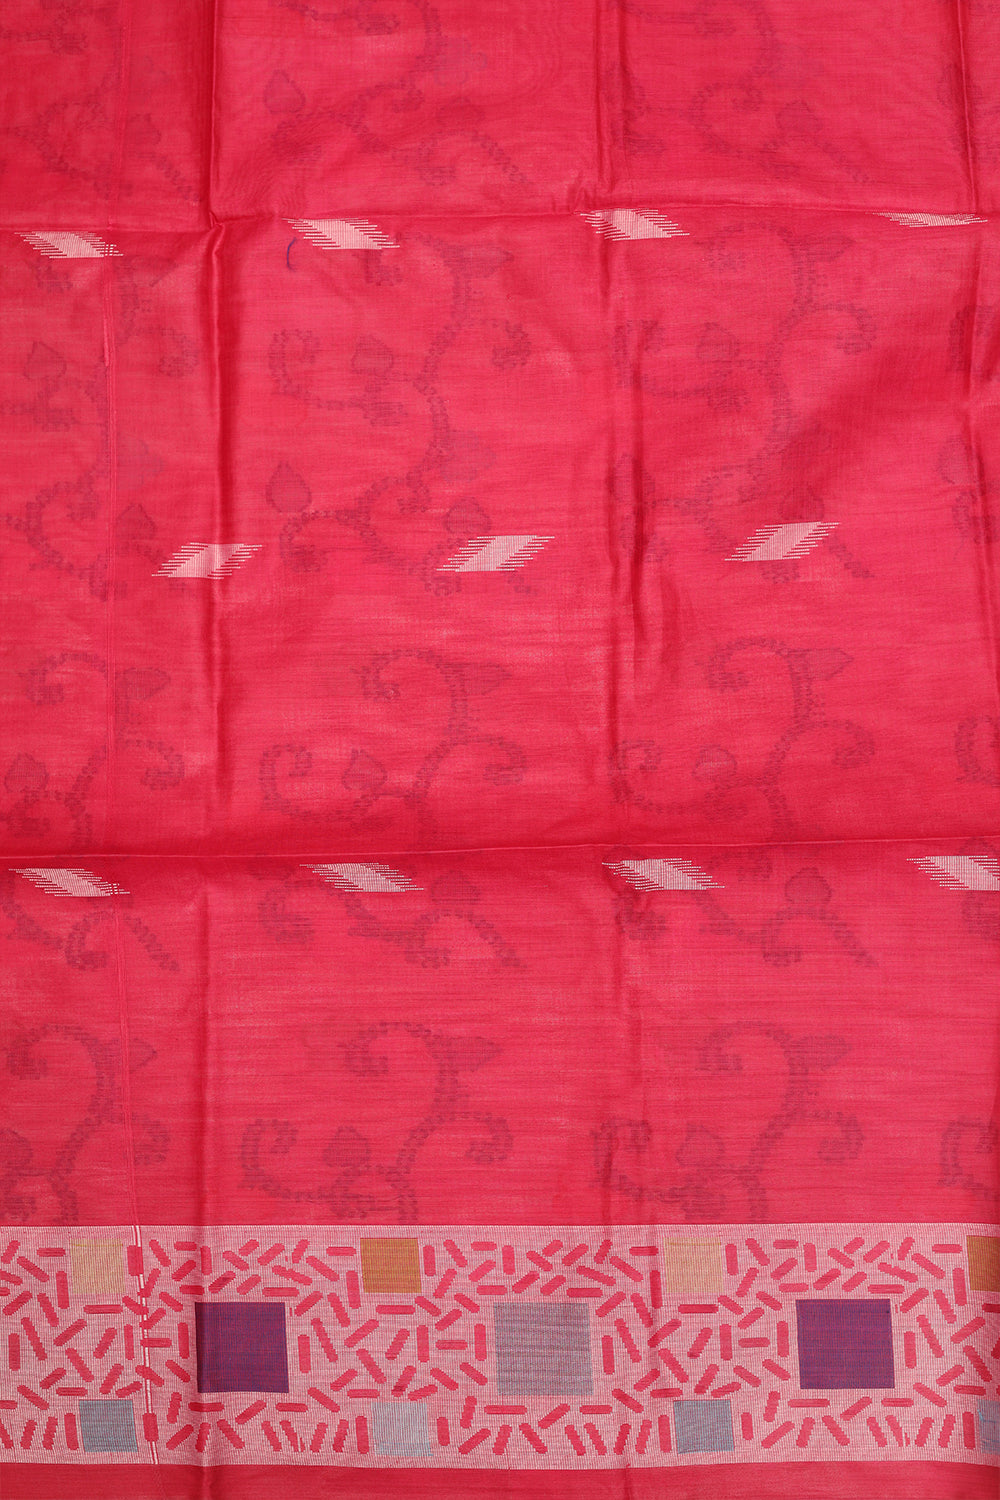 Rani pink threaded cotton saree